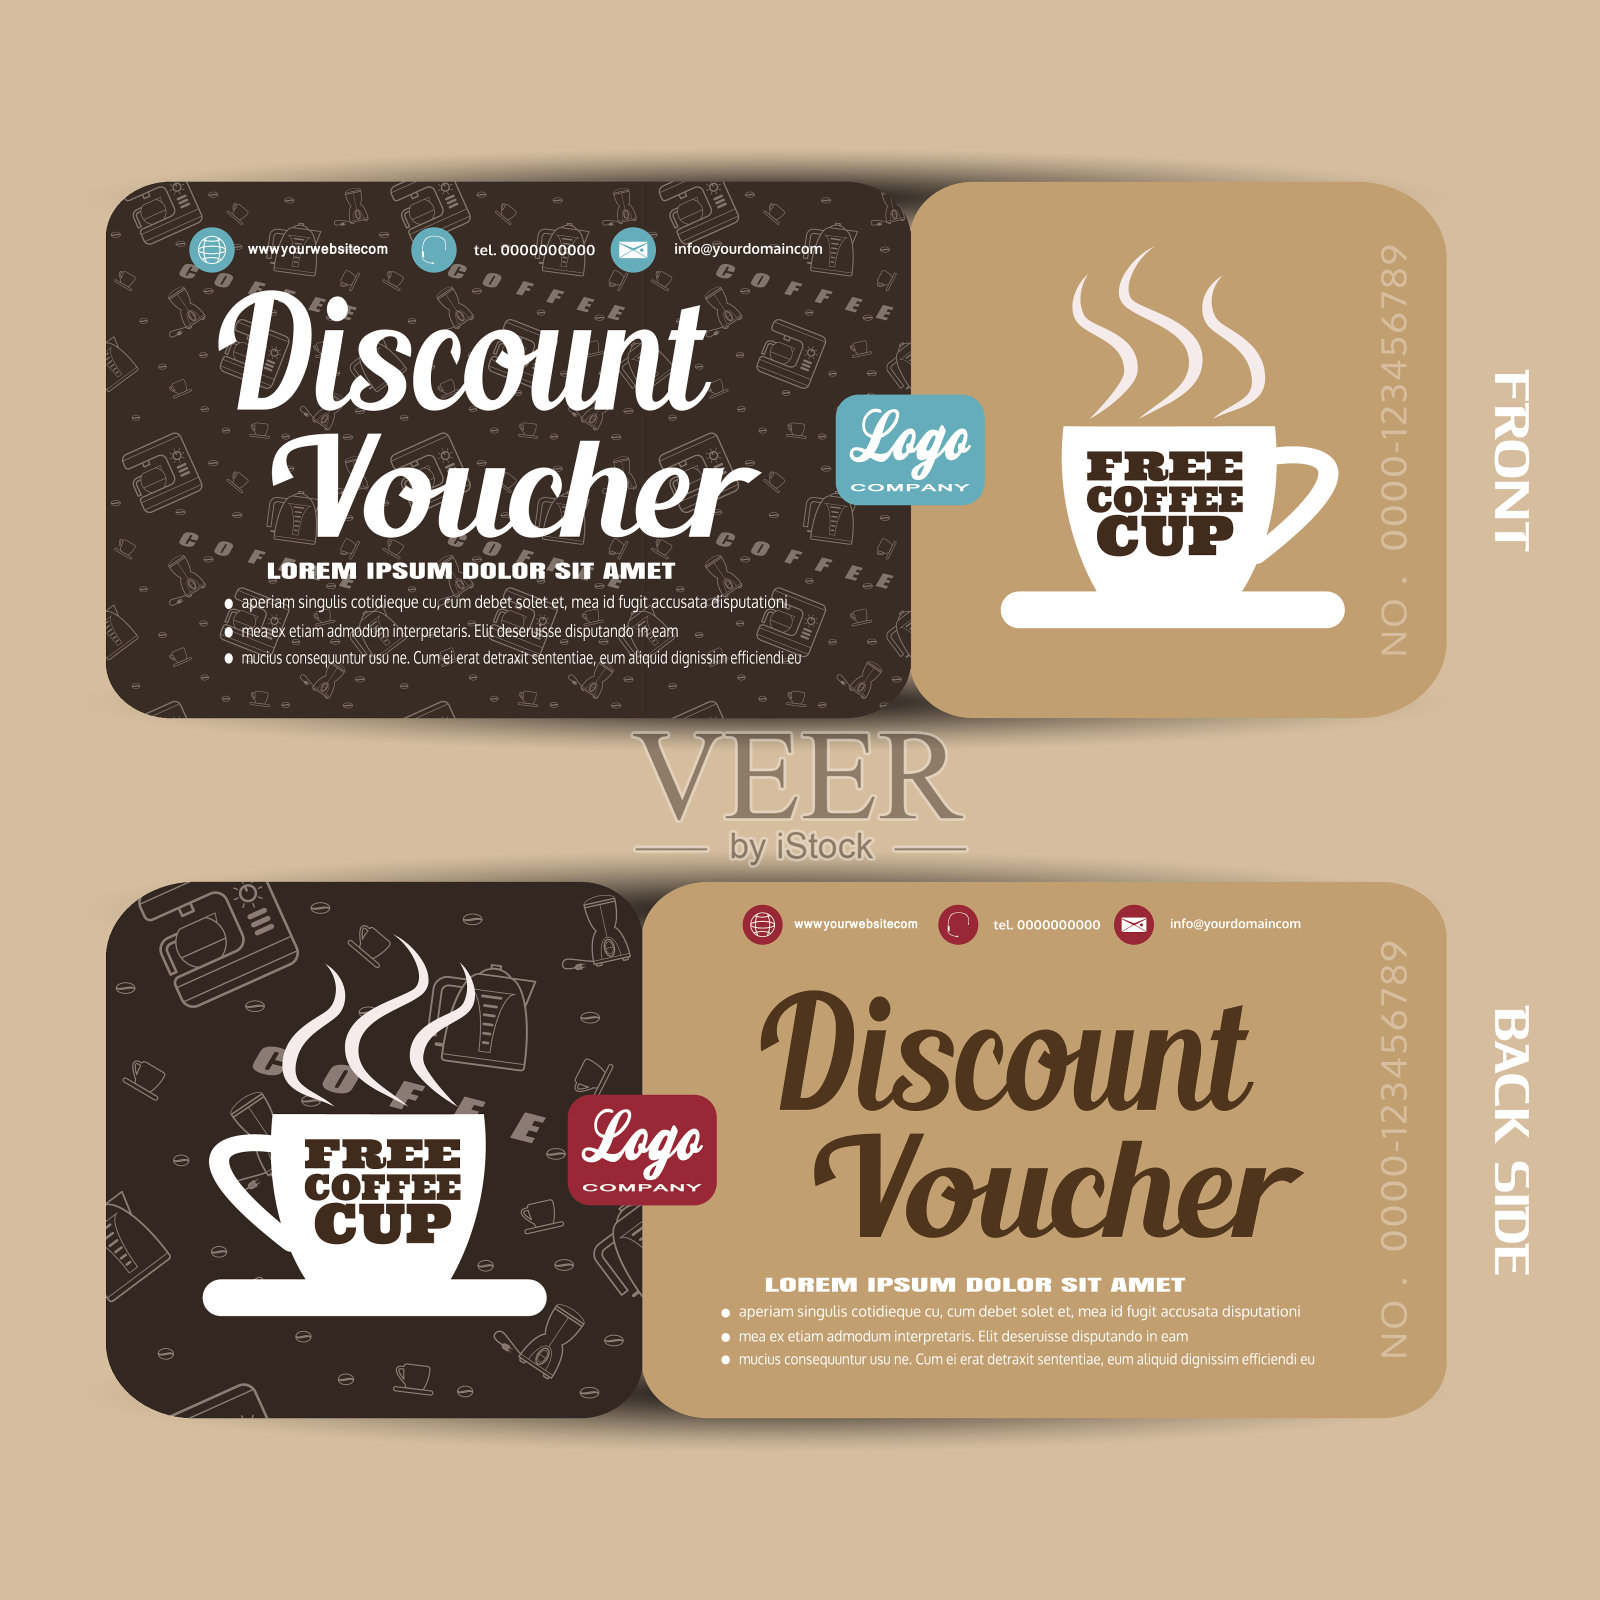 折扣券矢量插图咖啡增加销售。设计模板素材